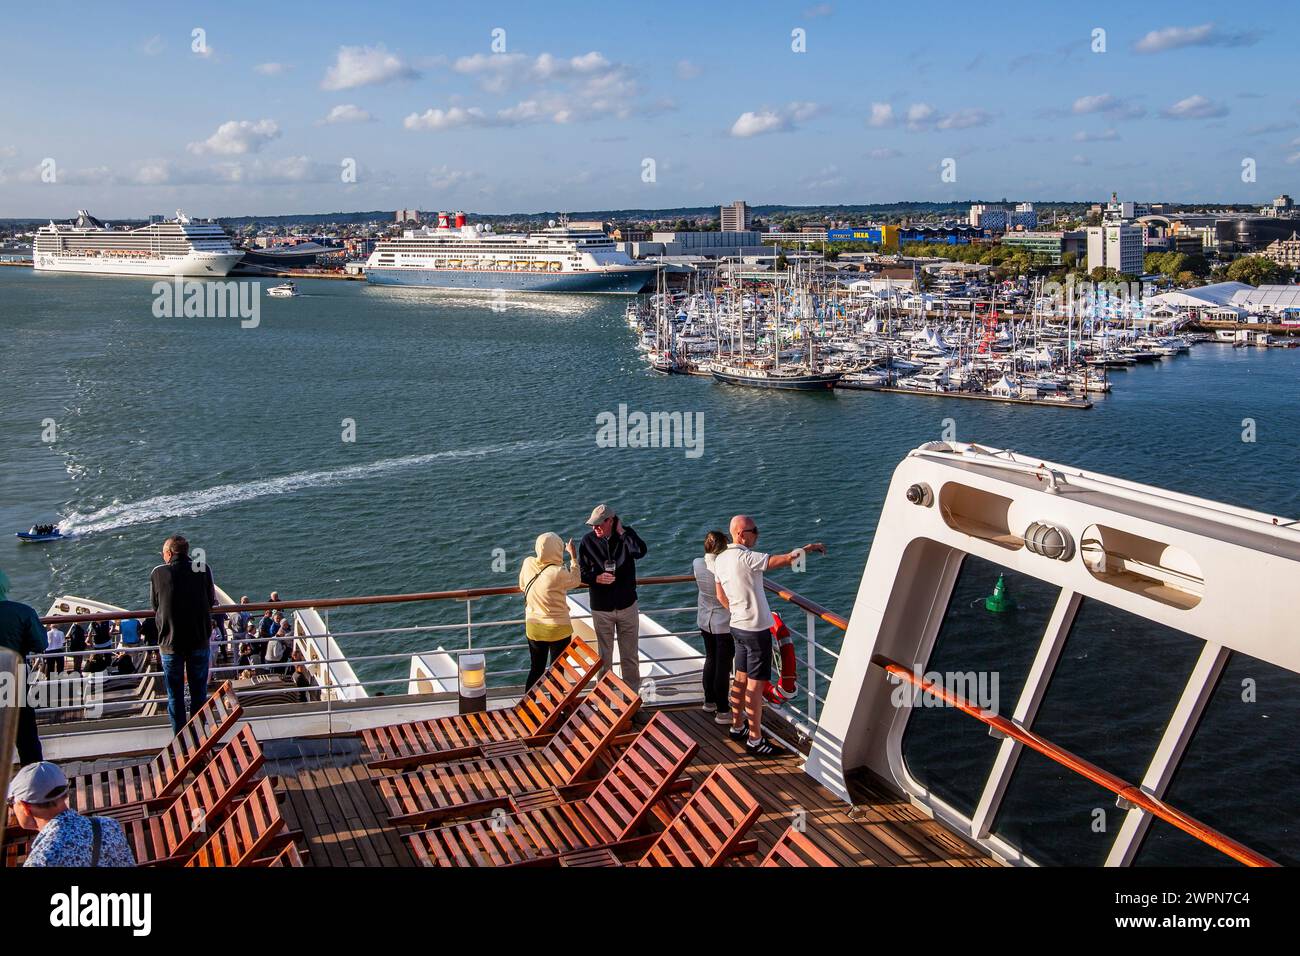 Terrazza solarium della Queen Mary 2 con navi da crociera nel porto di Southampton, Hampshire, Gran Bretagna, Inghilterra Foto Stock